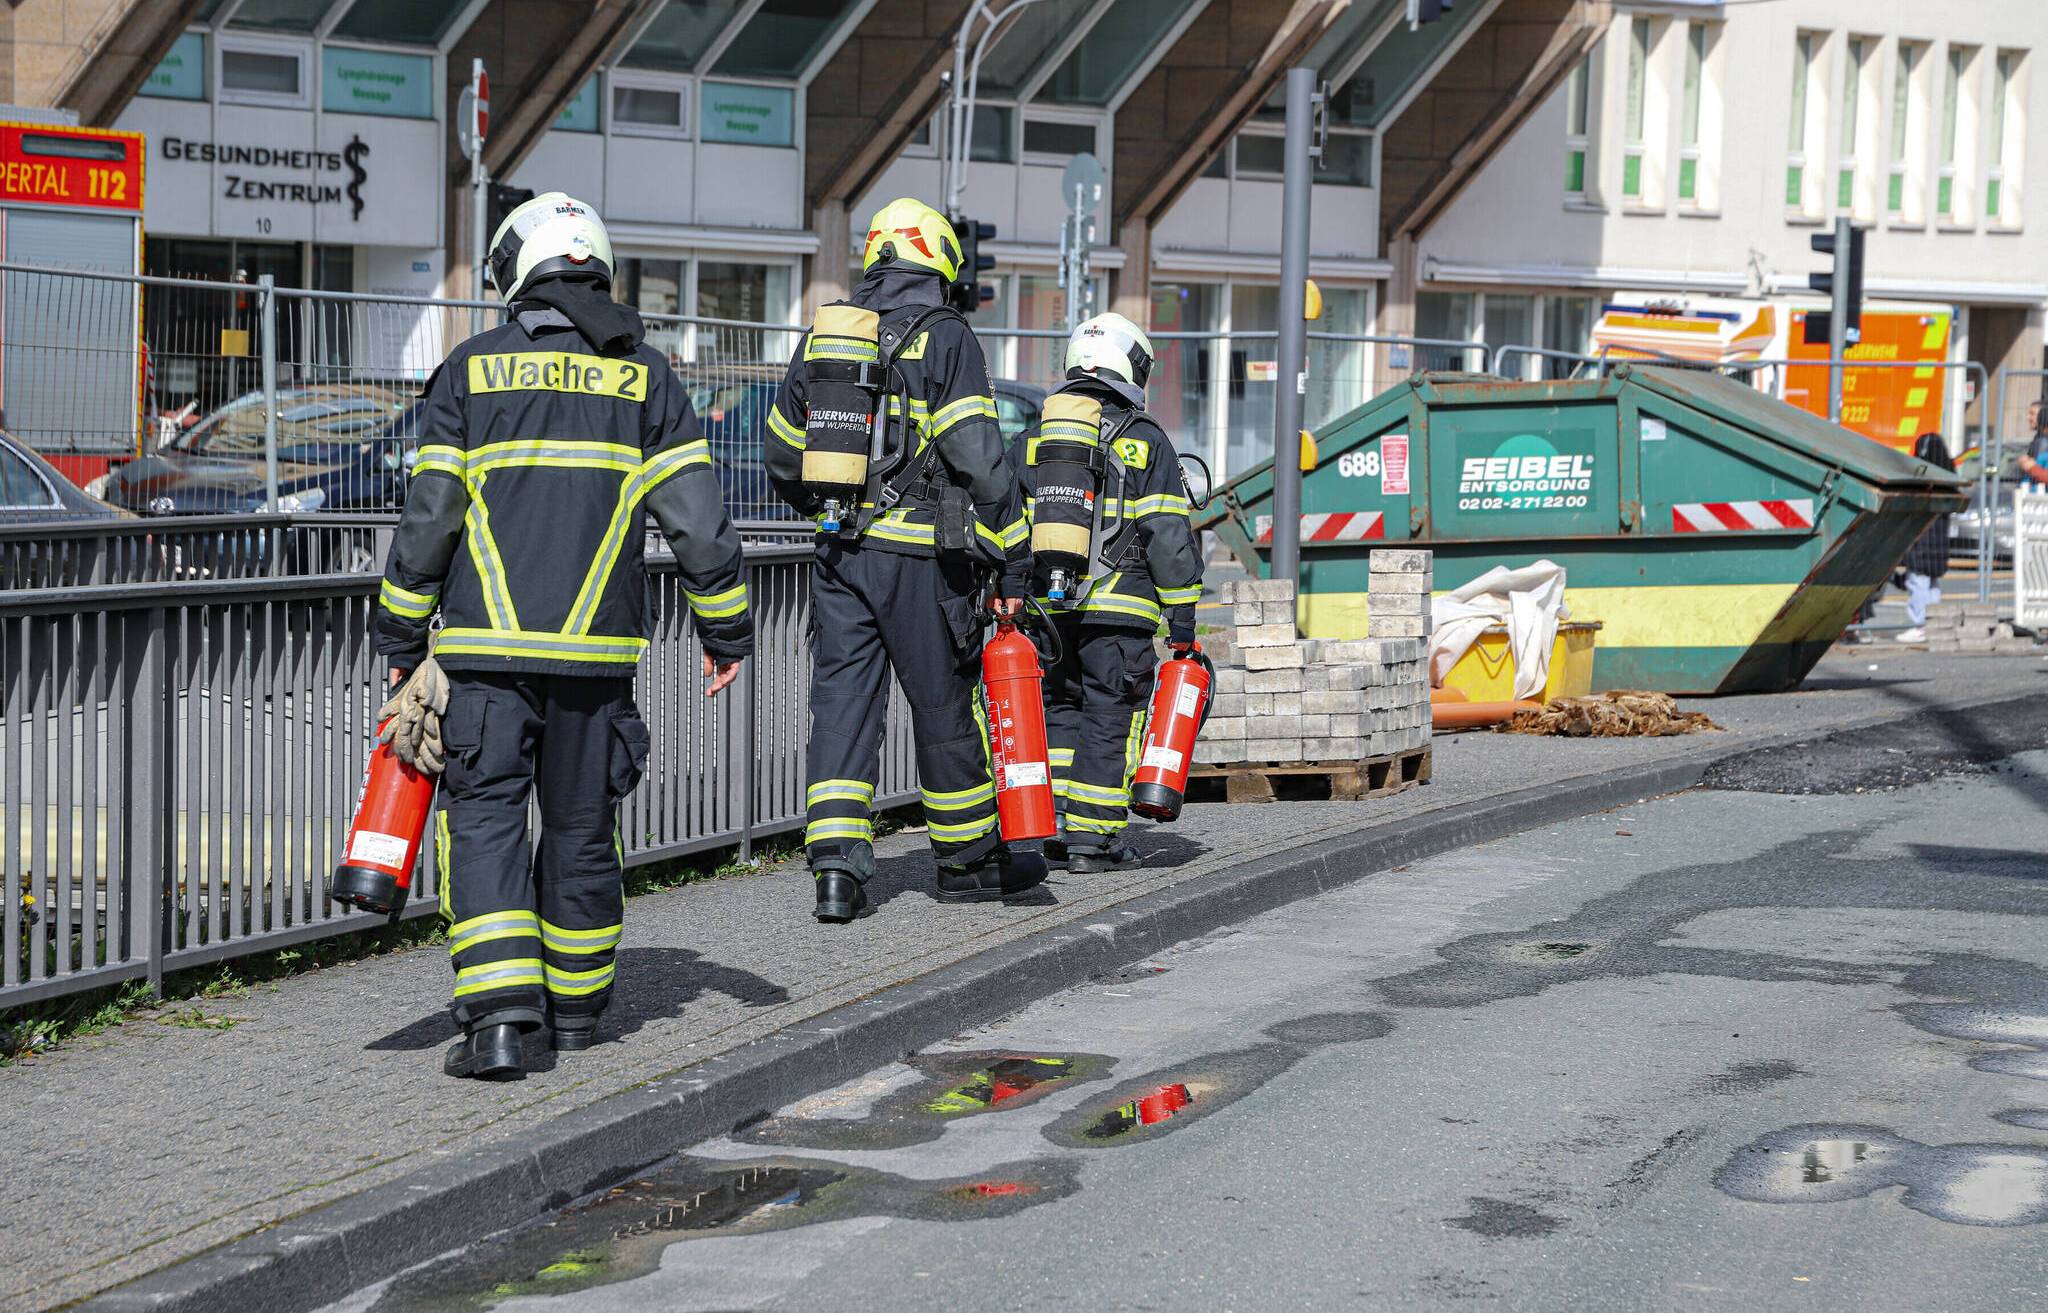 Feuerwehr-Einsatz in ehemaliger Unterführung​ in Wuppertal